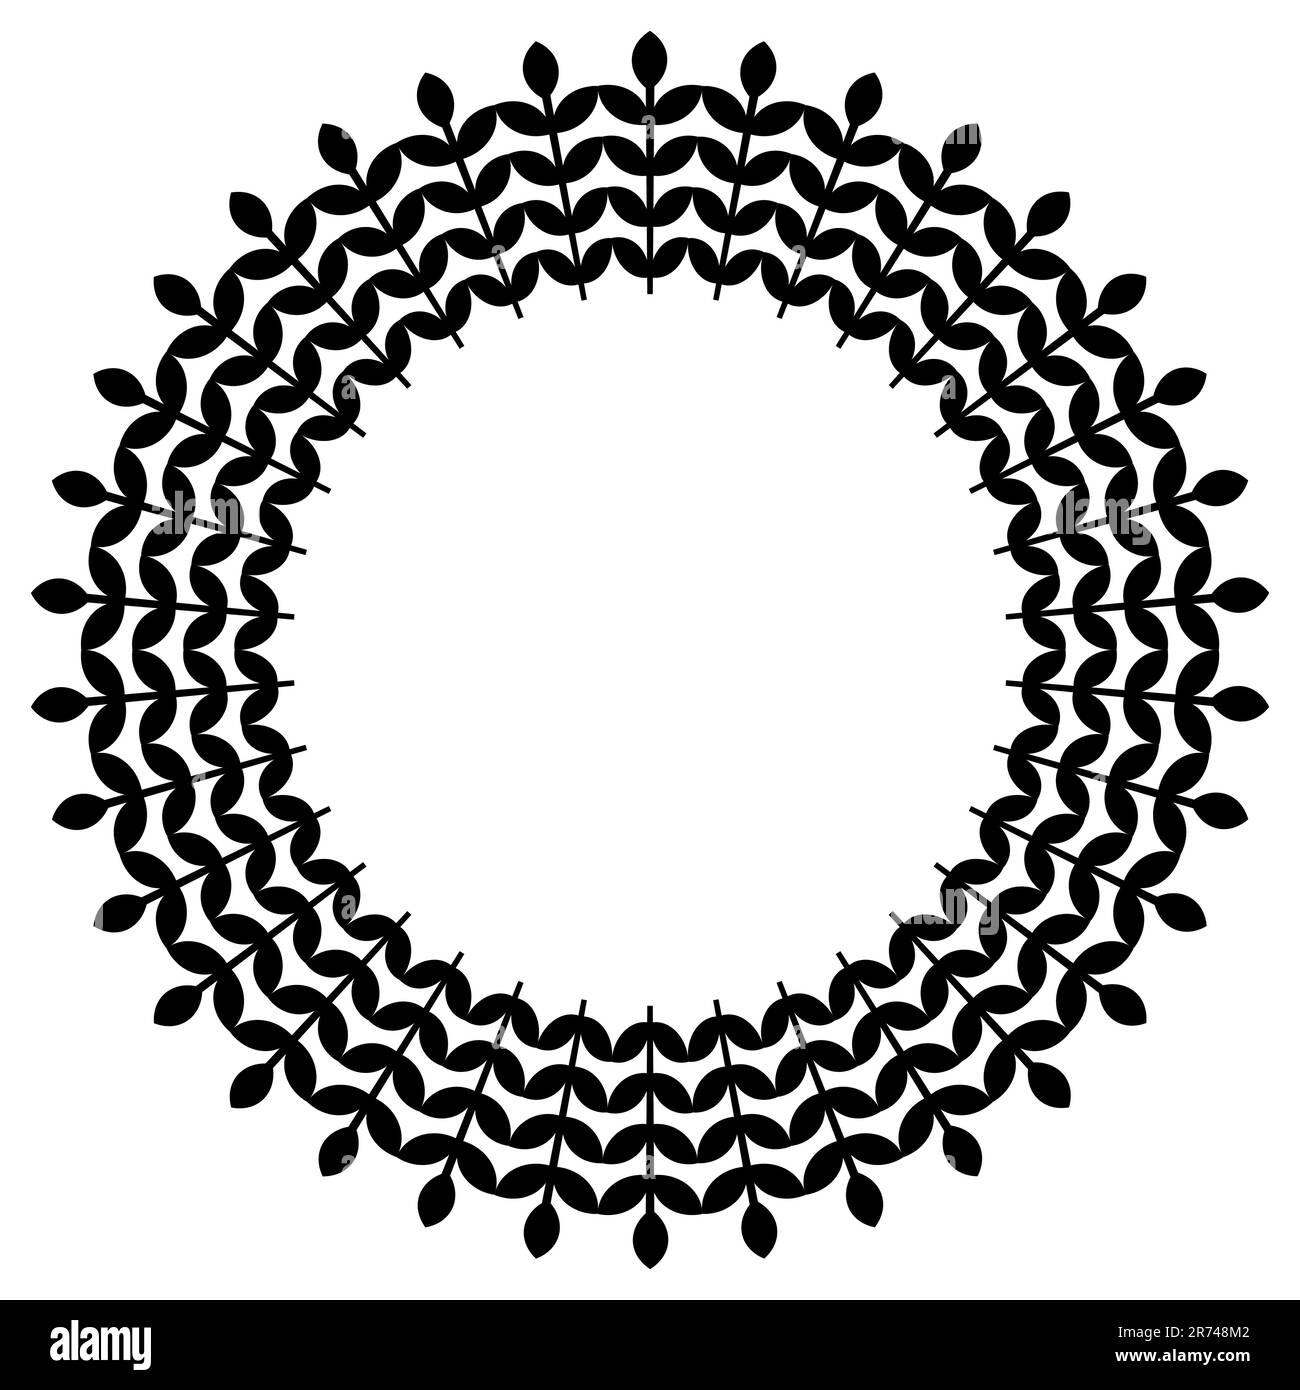 Kreisrahmen mit Zweigen Farbe Schwarz Rahmenschmuck Vektordarstellung isoliert auf weißem Hintergrund Stock Vektor